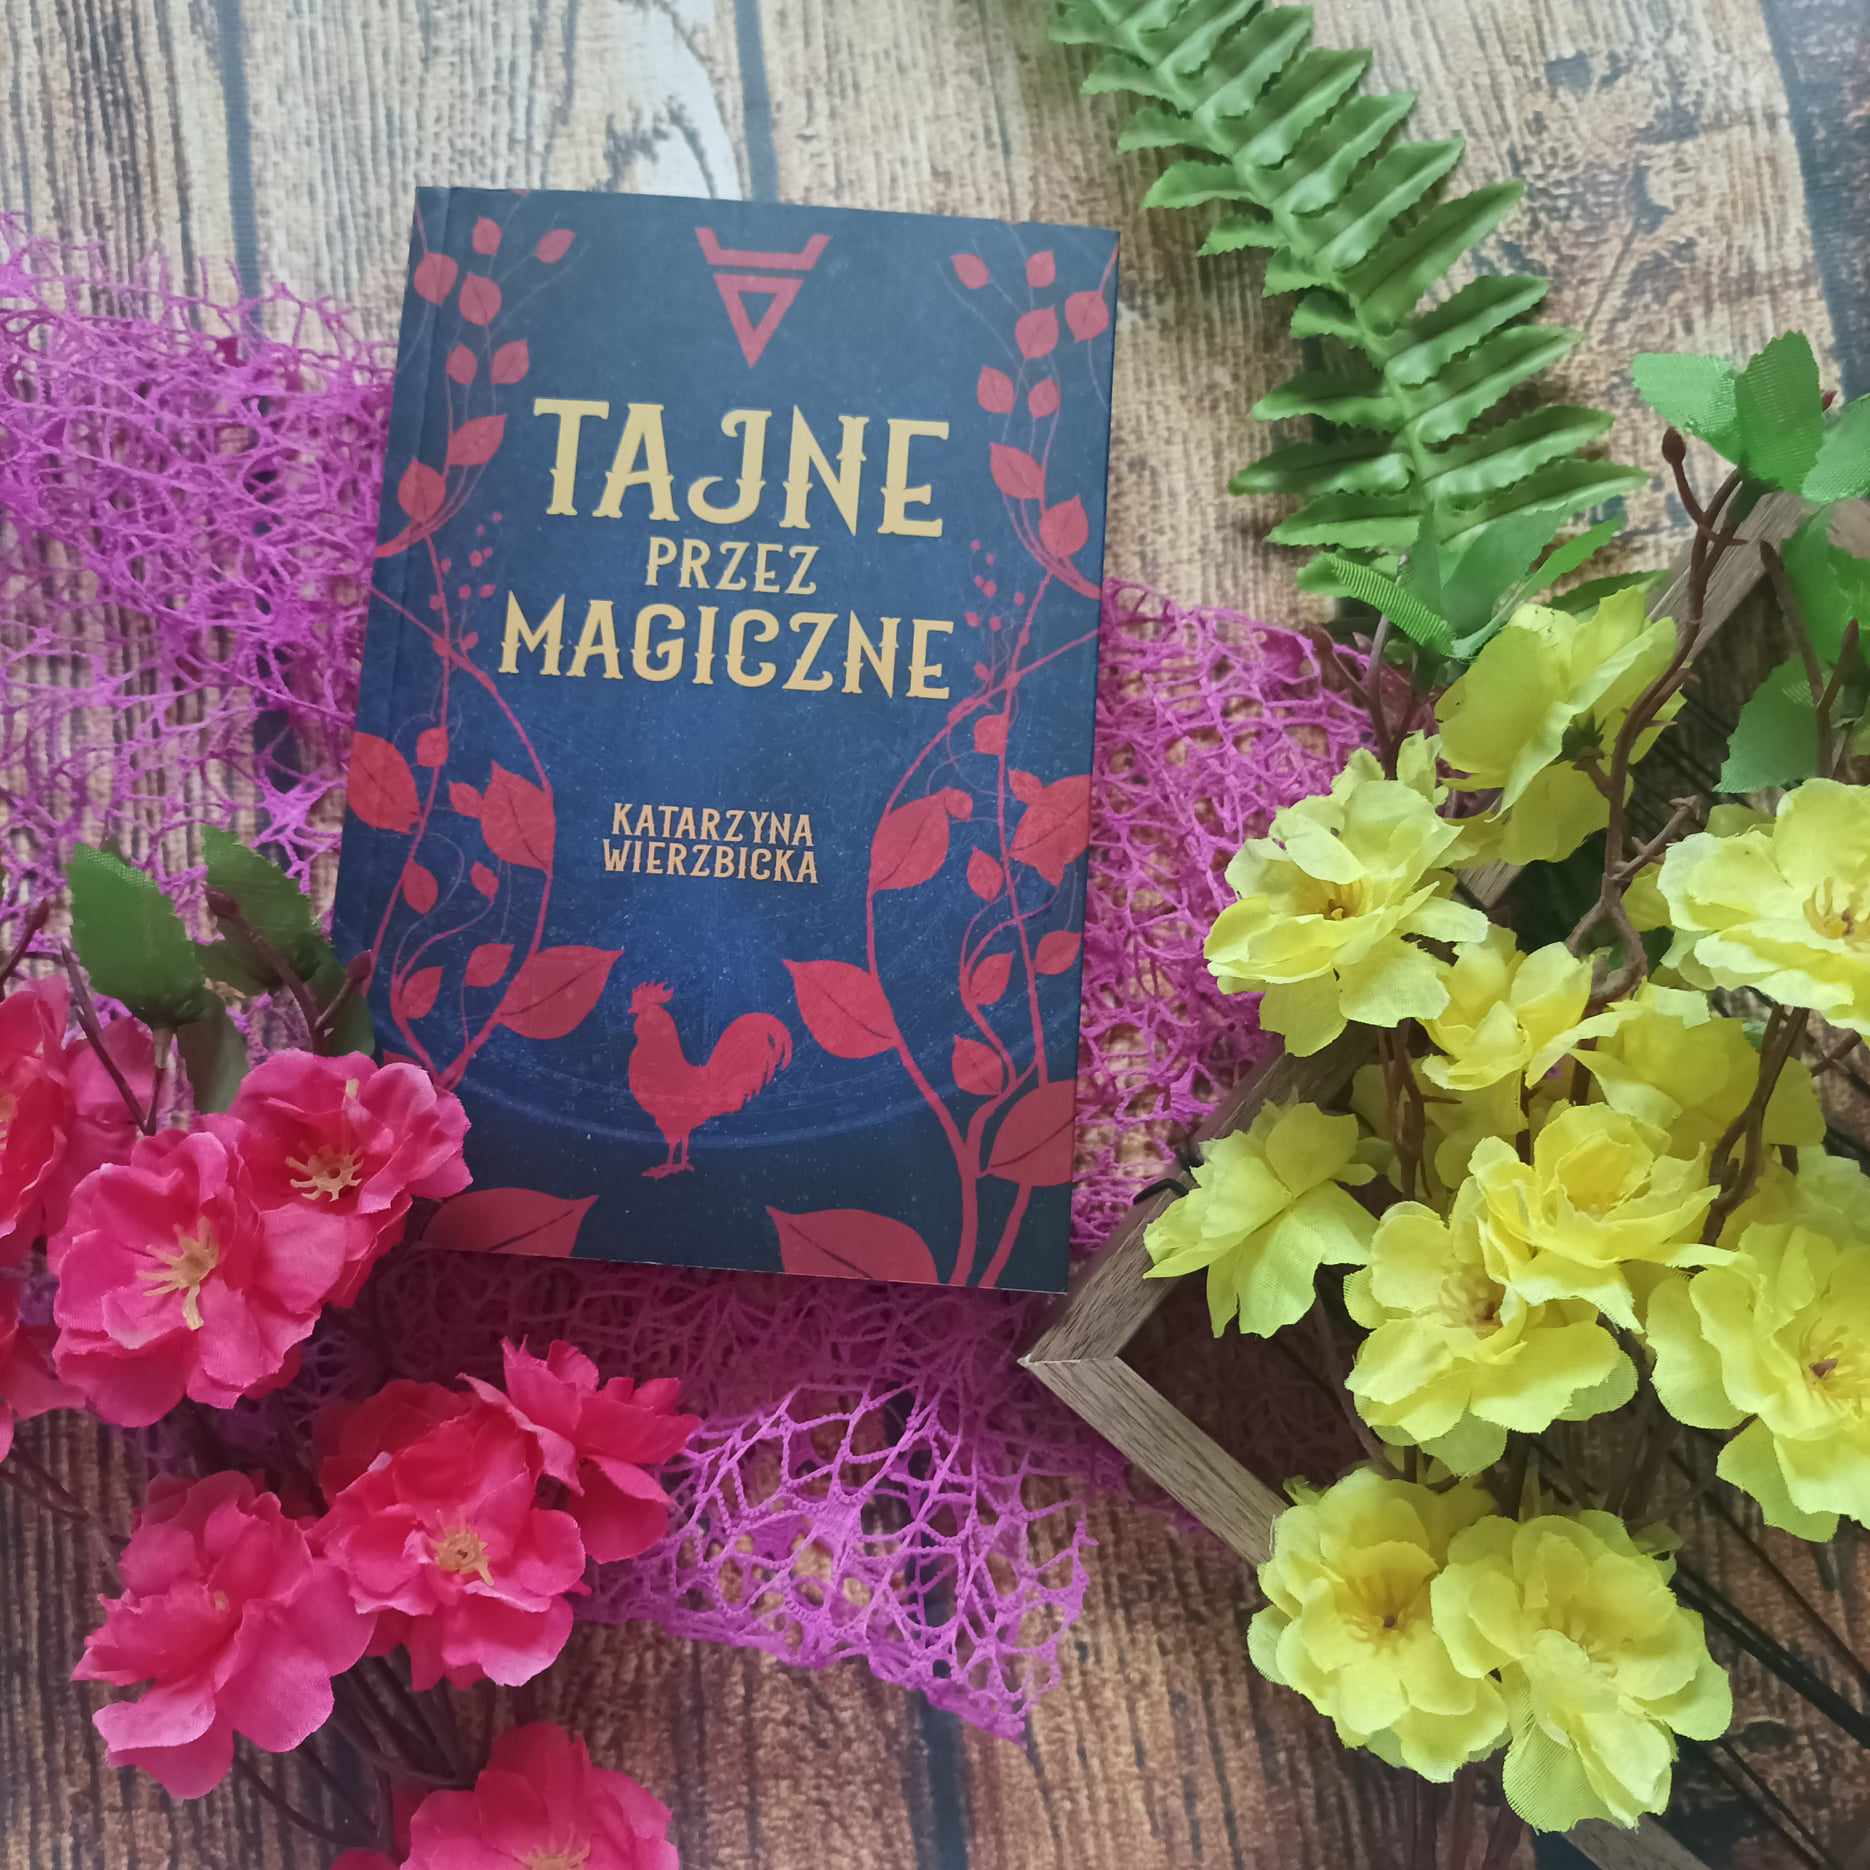 You are currently viewing Tajne przez magiczne Katarzyna Wierzbicka